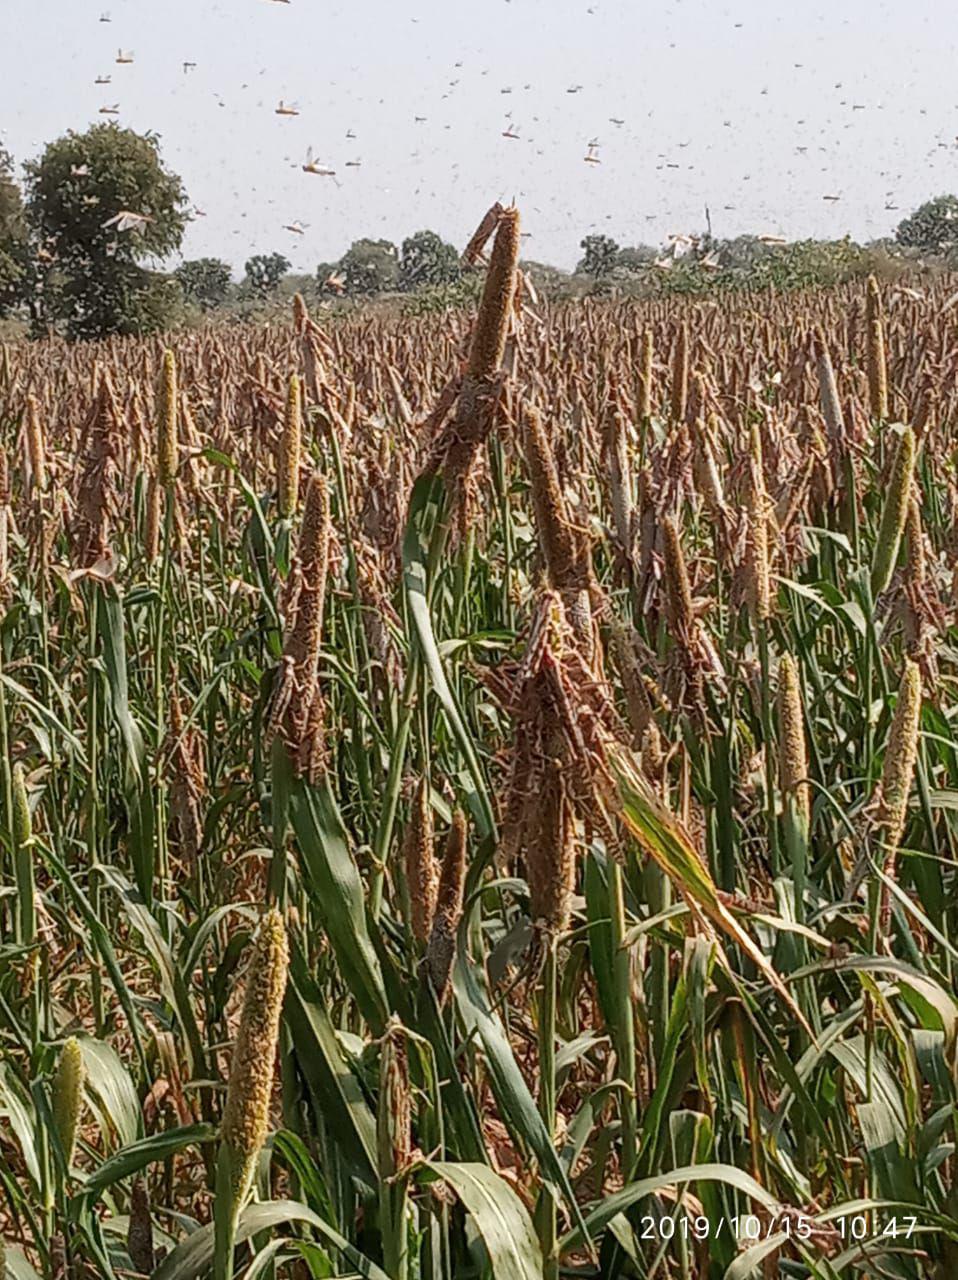 Locust attack : Damage to millet crop in Jodhpur